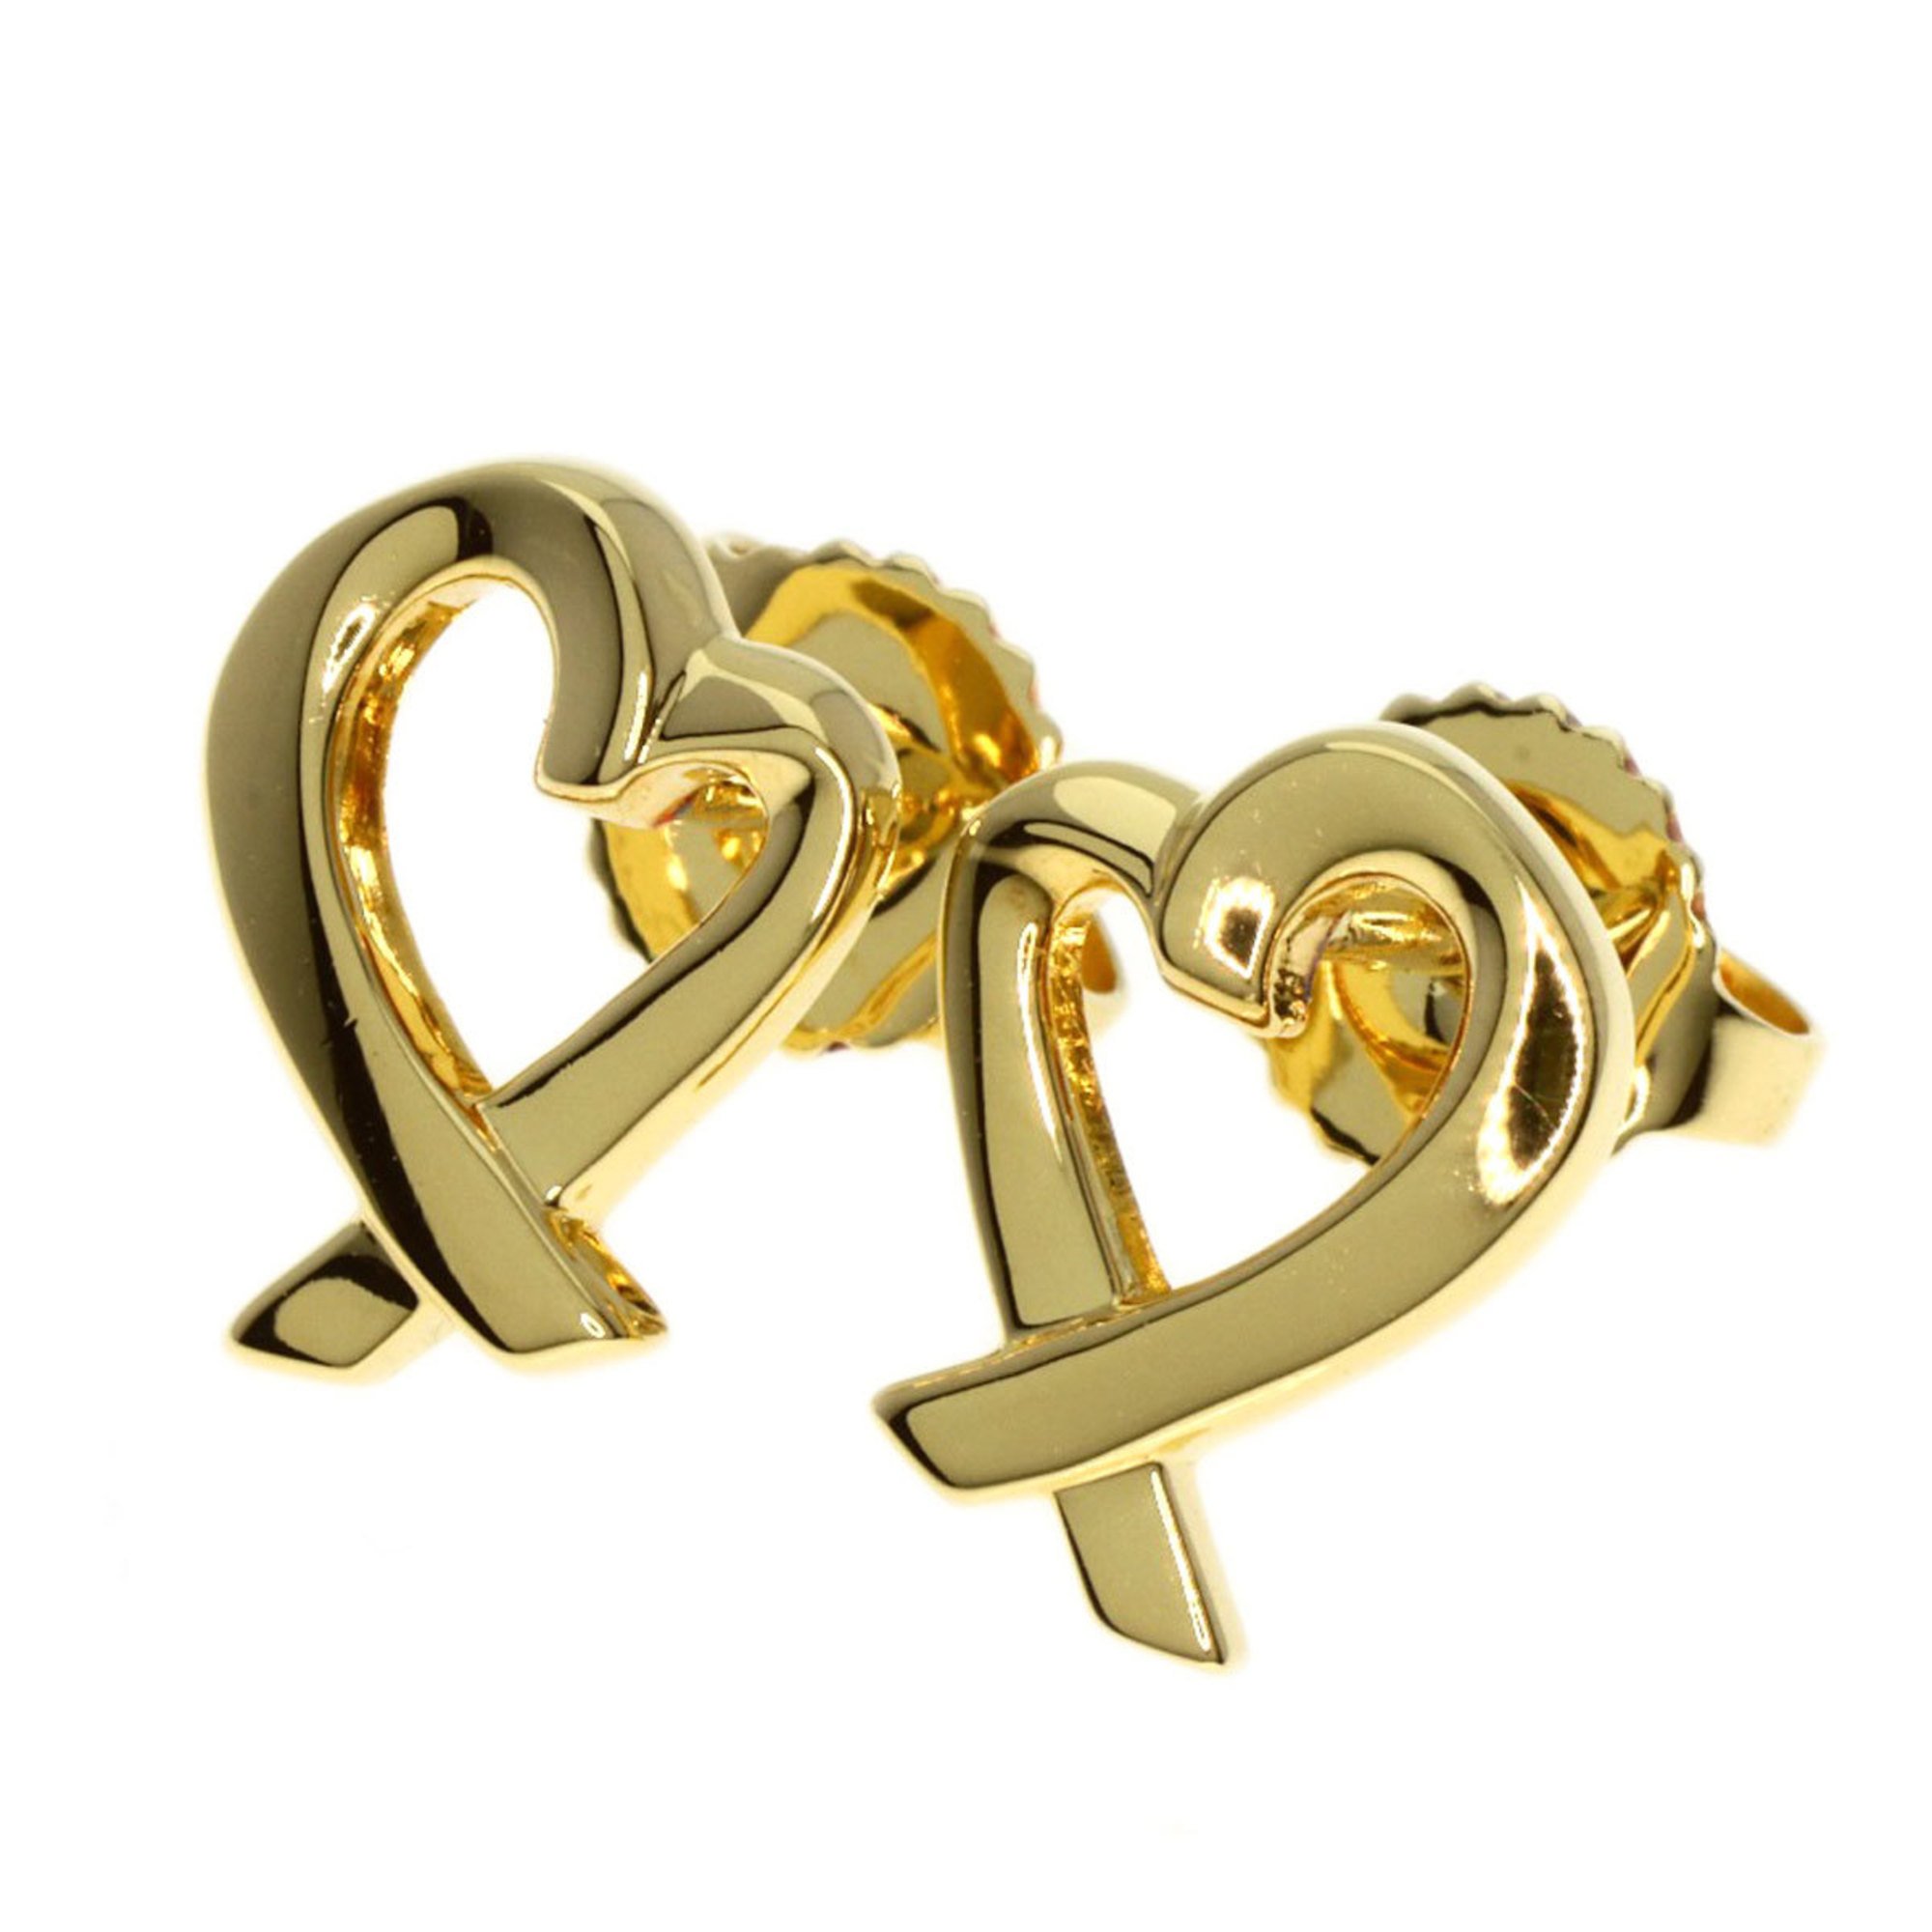 Tiffany Loving Heart Earrings K18 Yellow Gold Women's